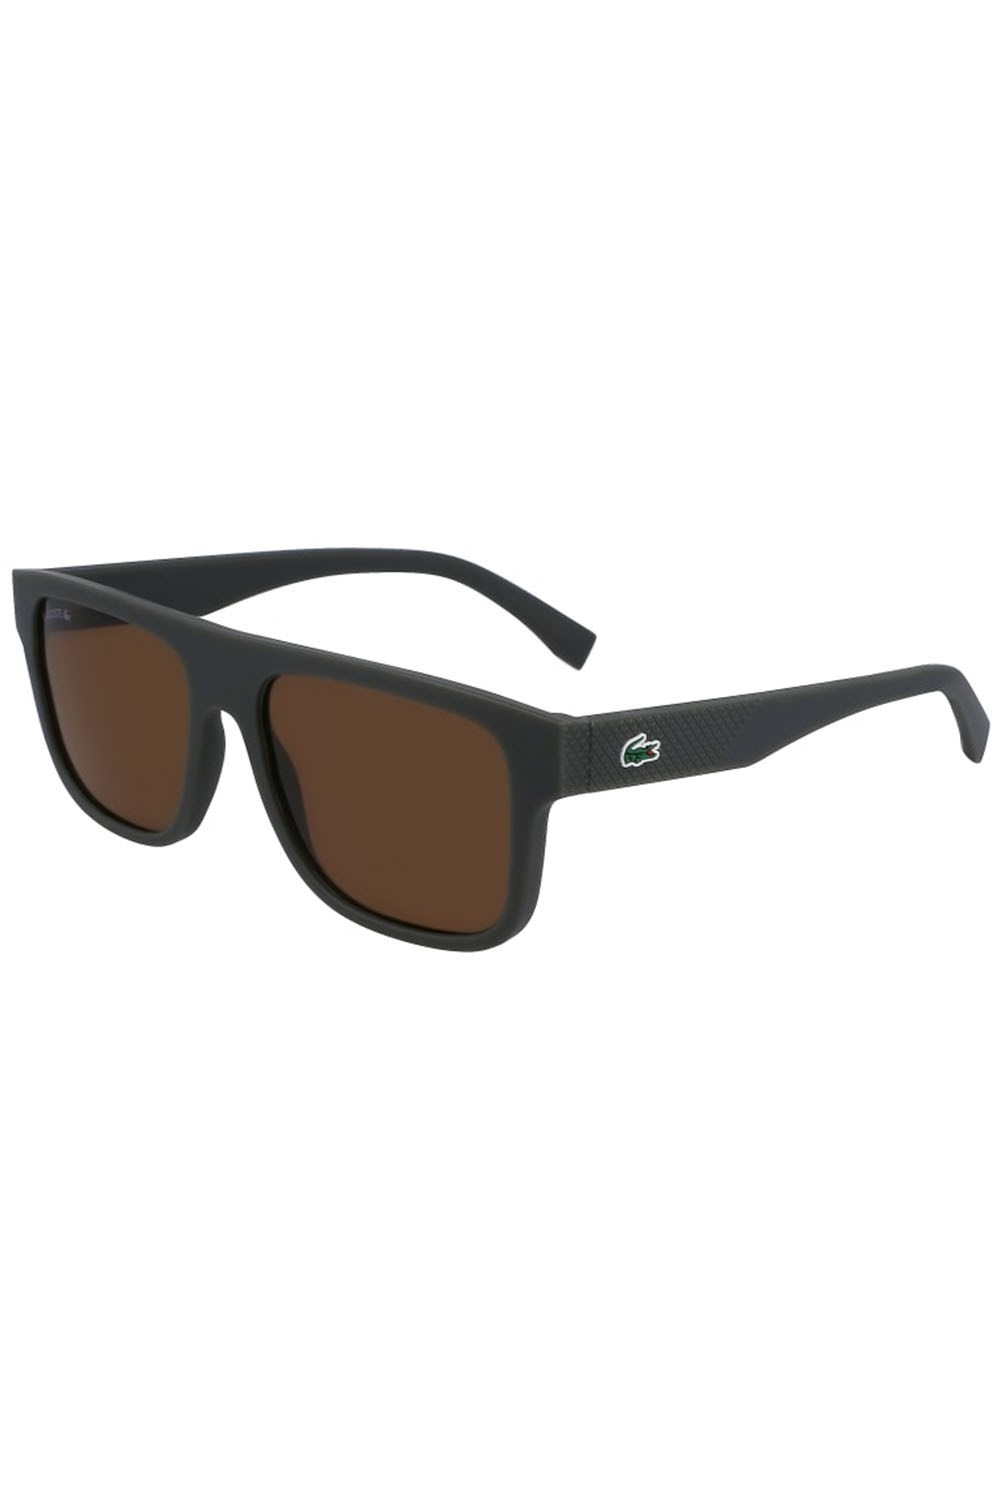 L6001s Unisex Sunglasses -